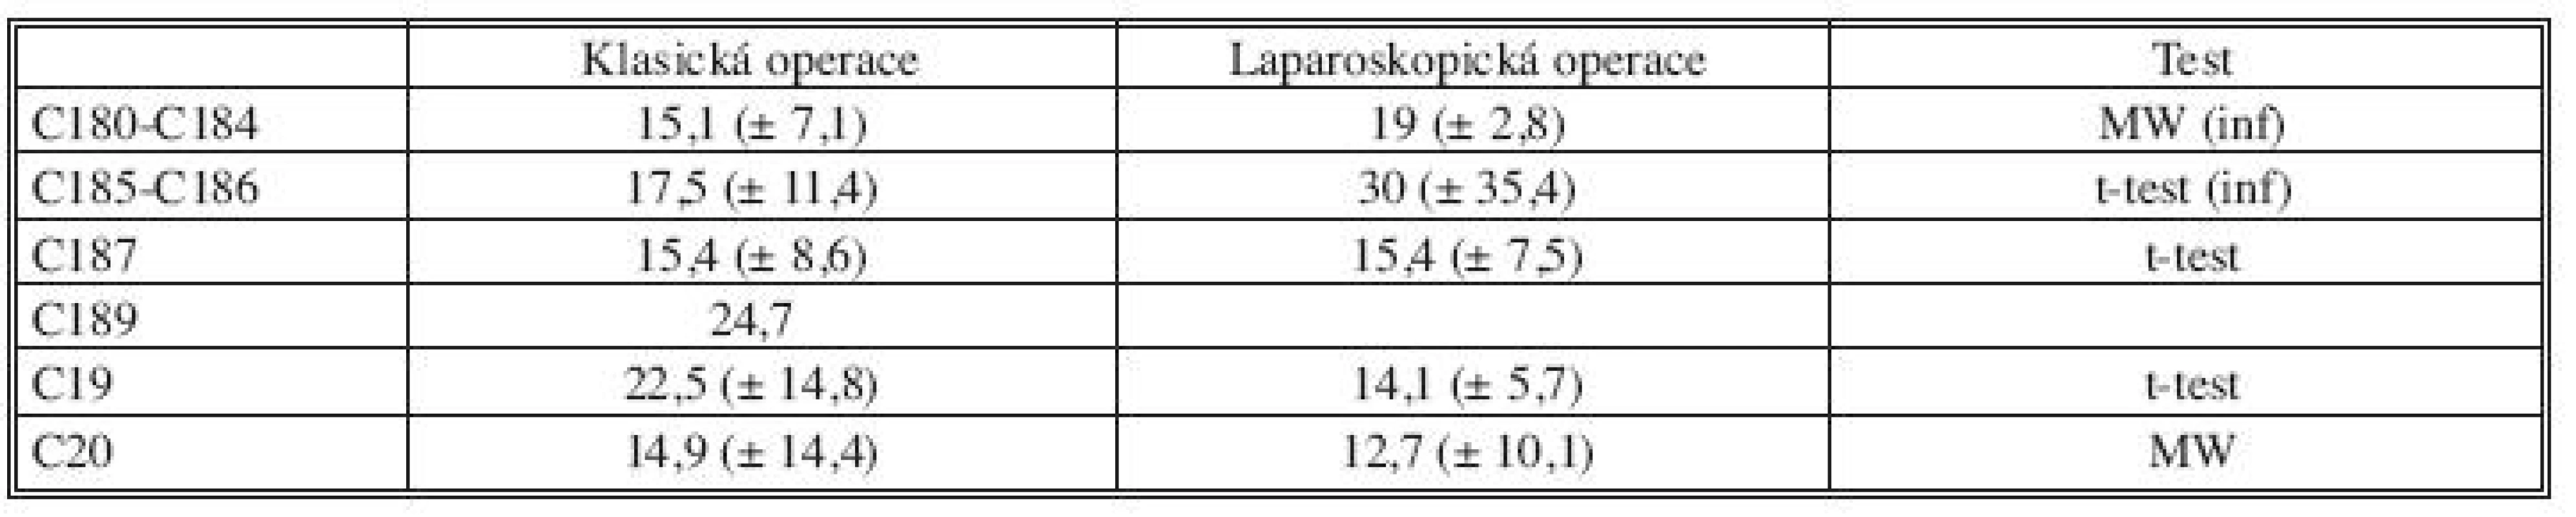 Průměrný počet odstraněných uzlin při klasické a laparoskopické resekci v roce 2008
Tab. 4. The average number of the examined lymph nodes in the surgical specimen in open and laparoscopic surgery in 2008